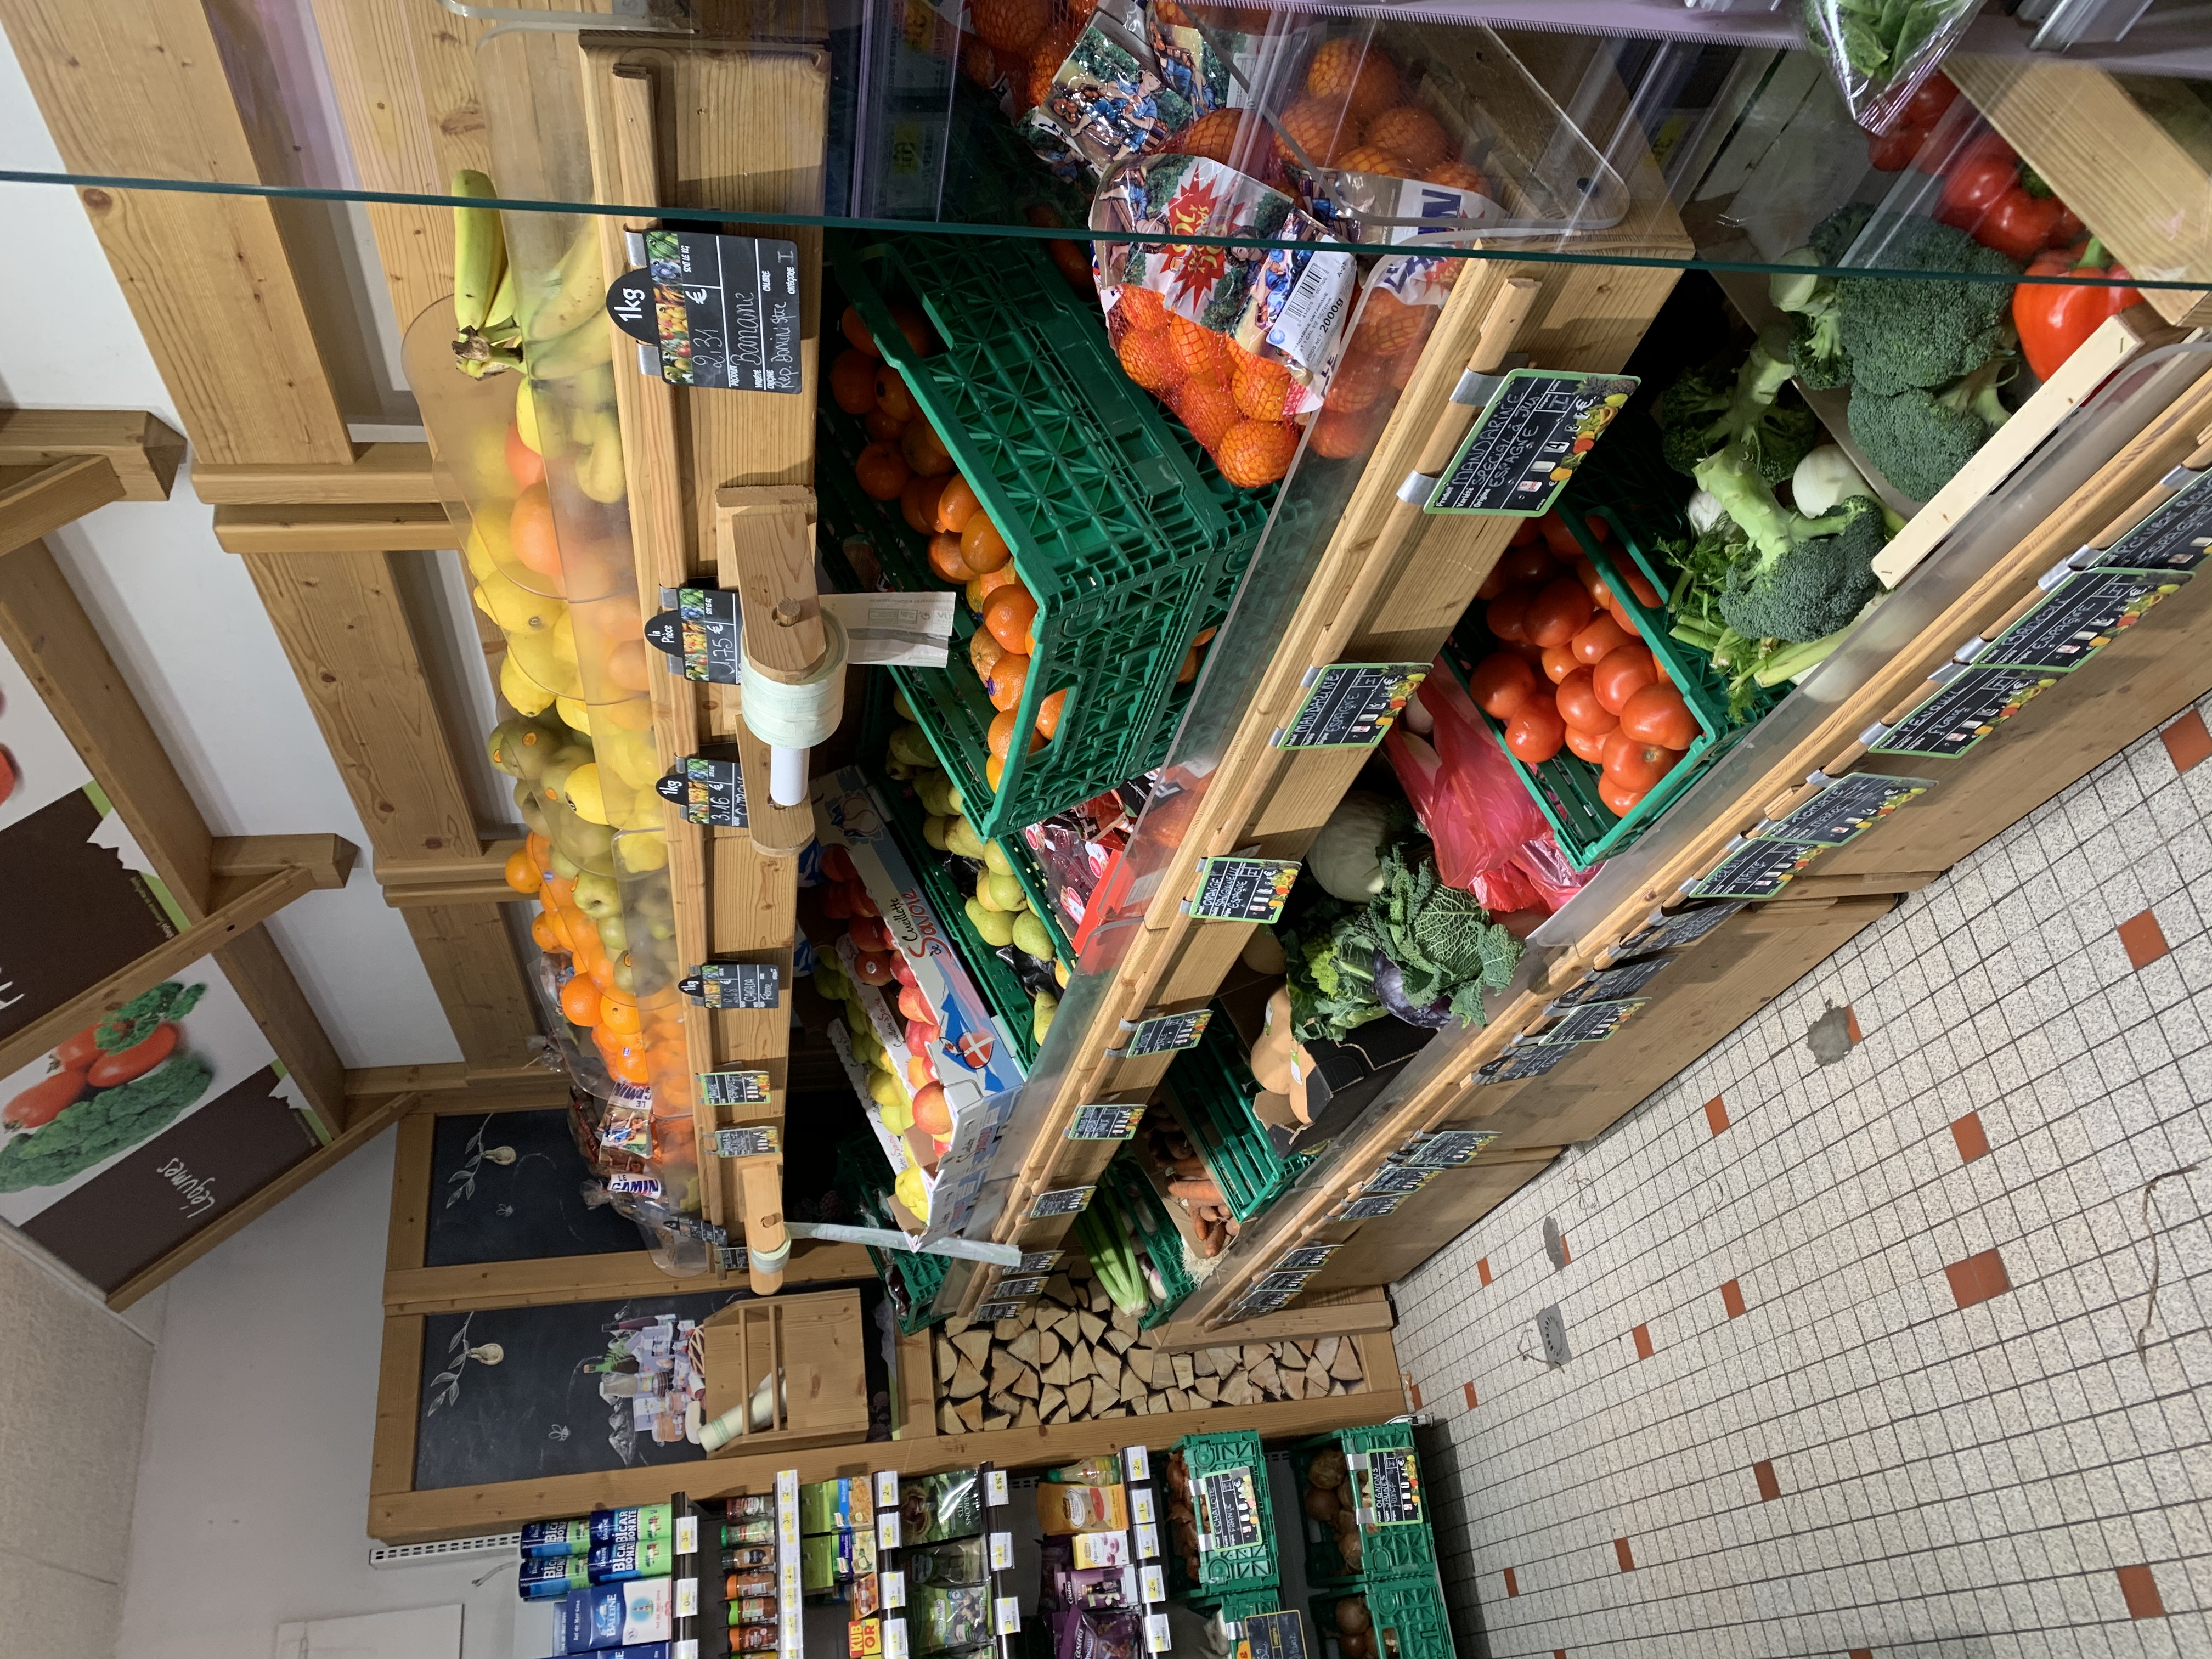 Intérieur supermarché sherpa Notre Dame de Bellecombe Rayon fruits et légumes